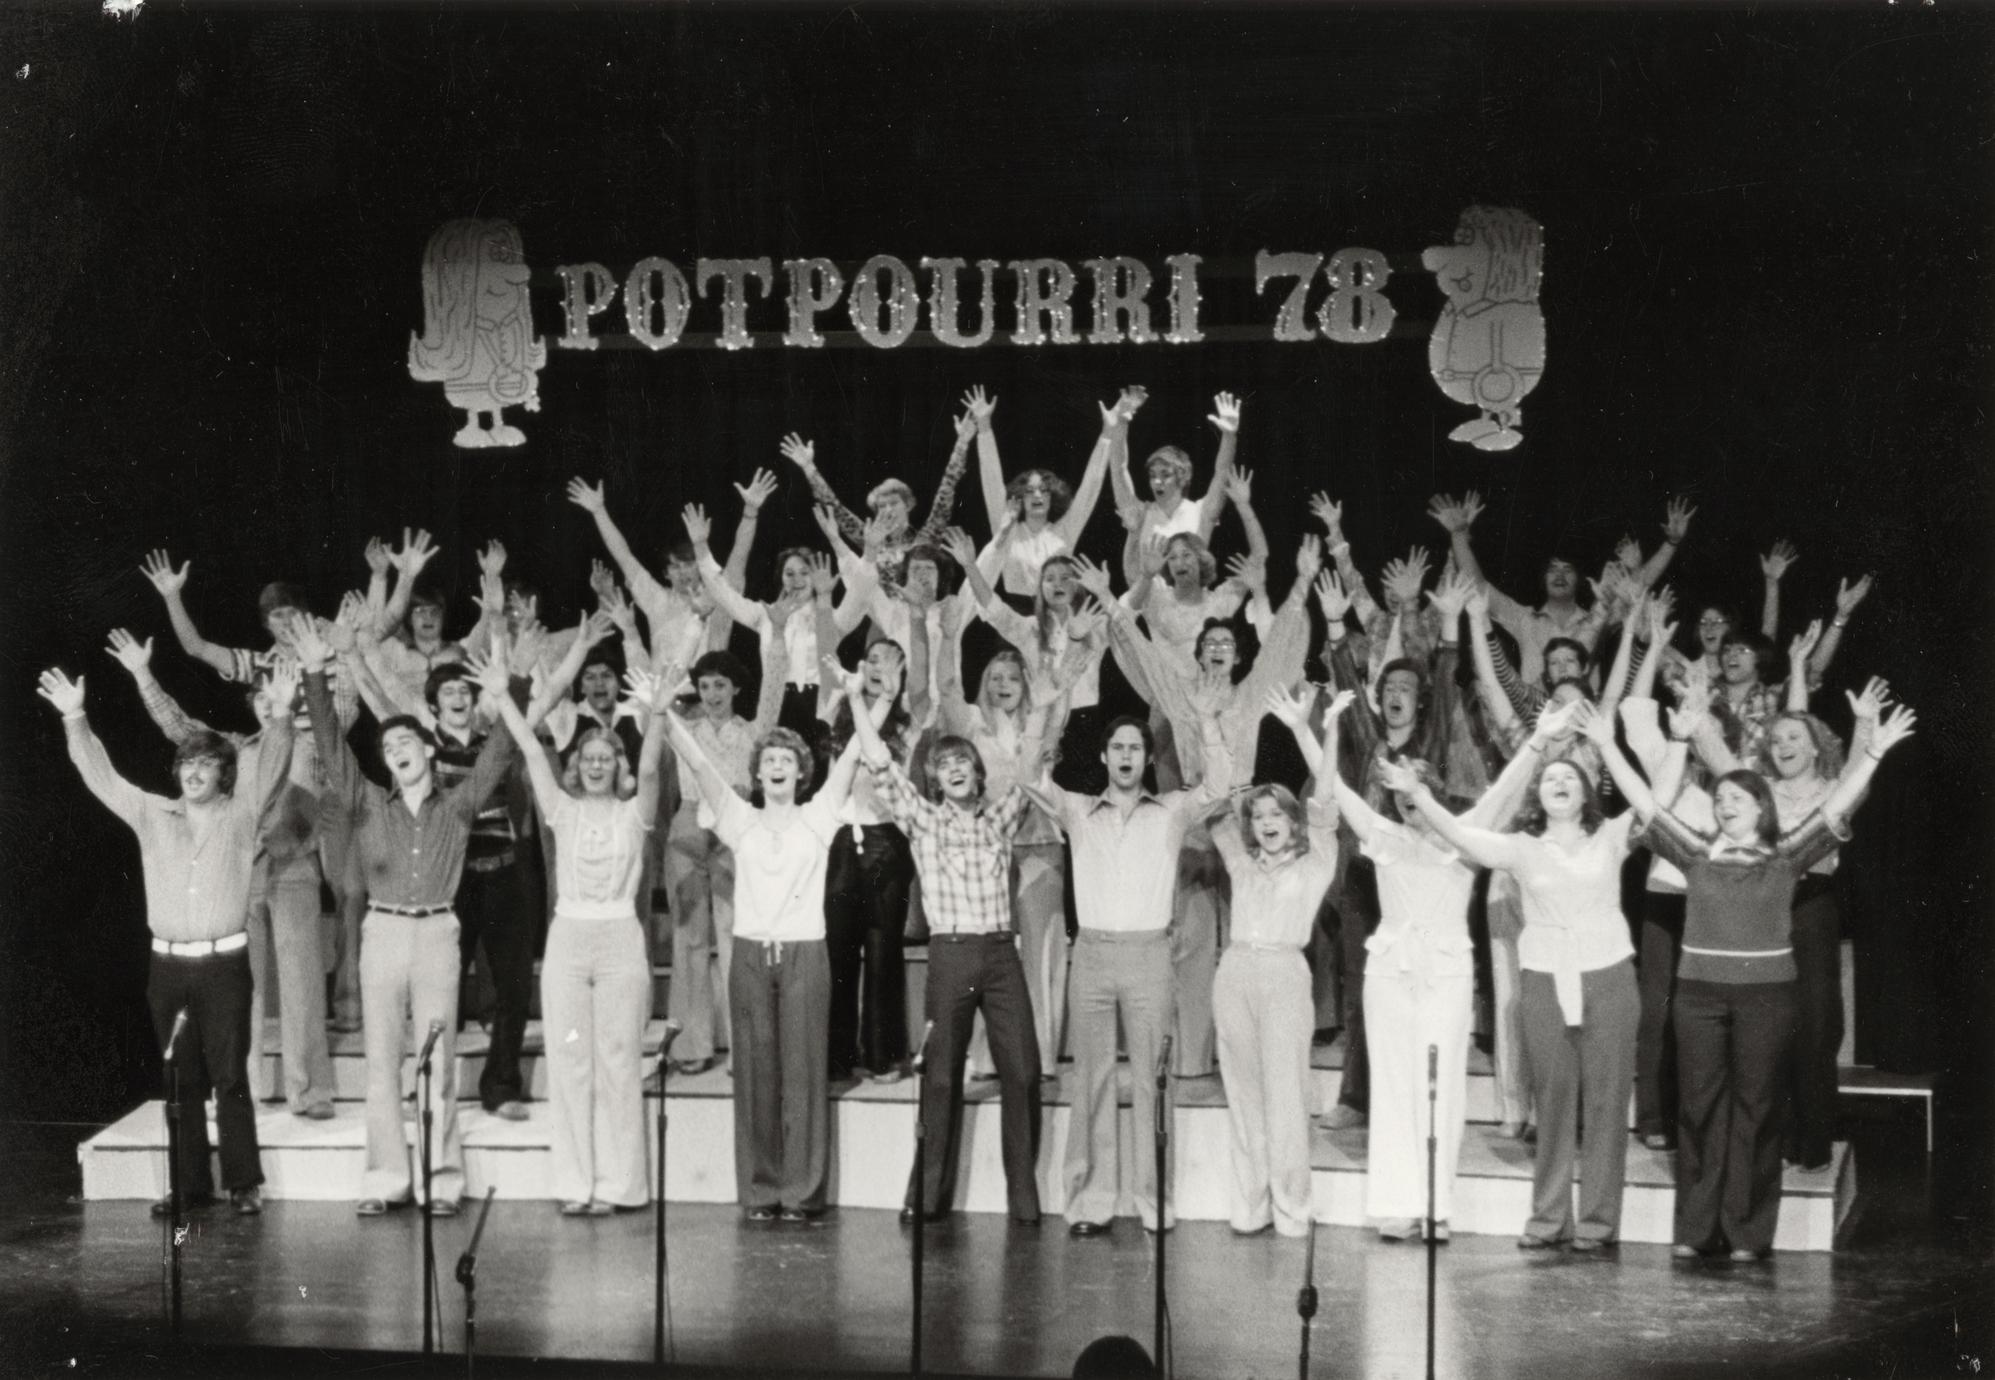 Potpourri 78